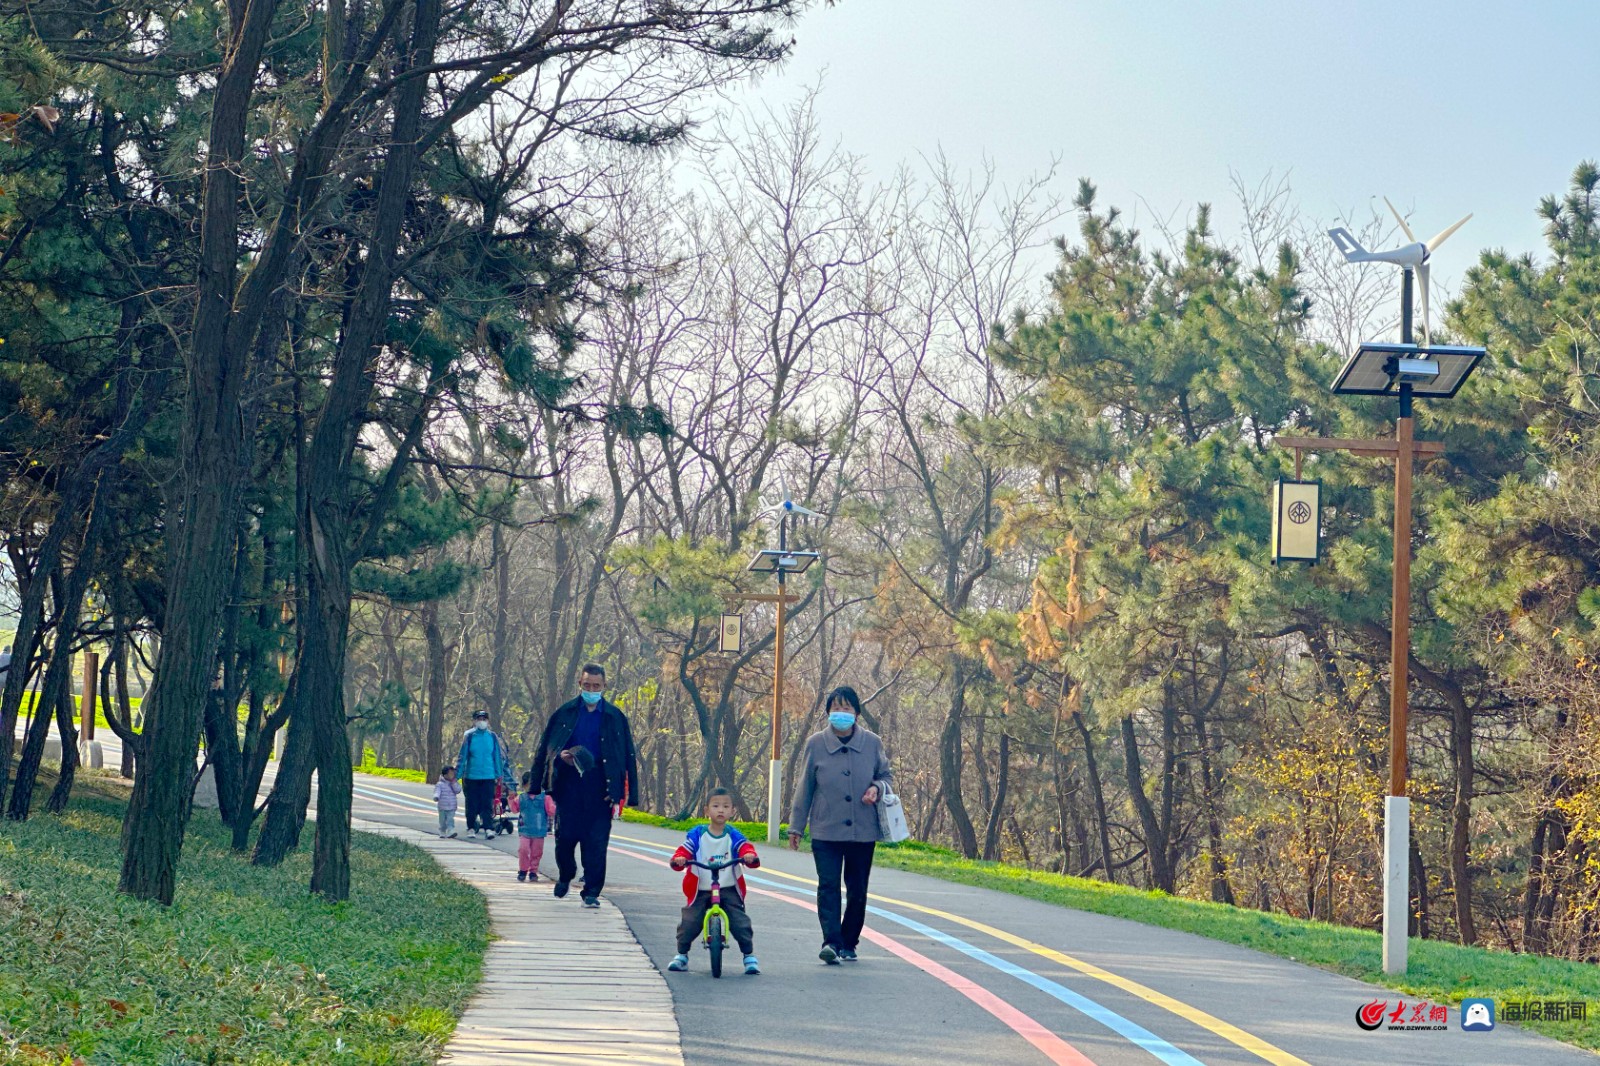 西海岸新区首个文化型公园-徐山公园。齐长城遗址贯穿东西的徐山-青青岛社区